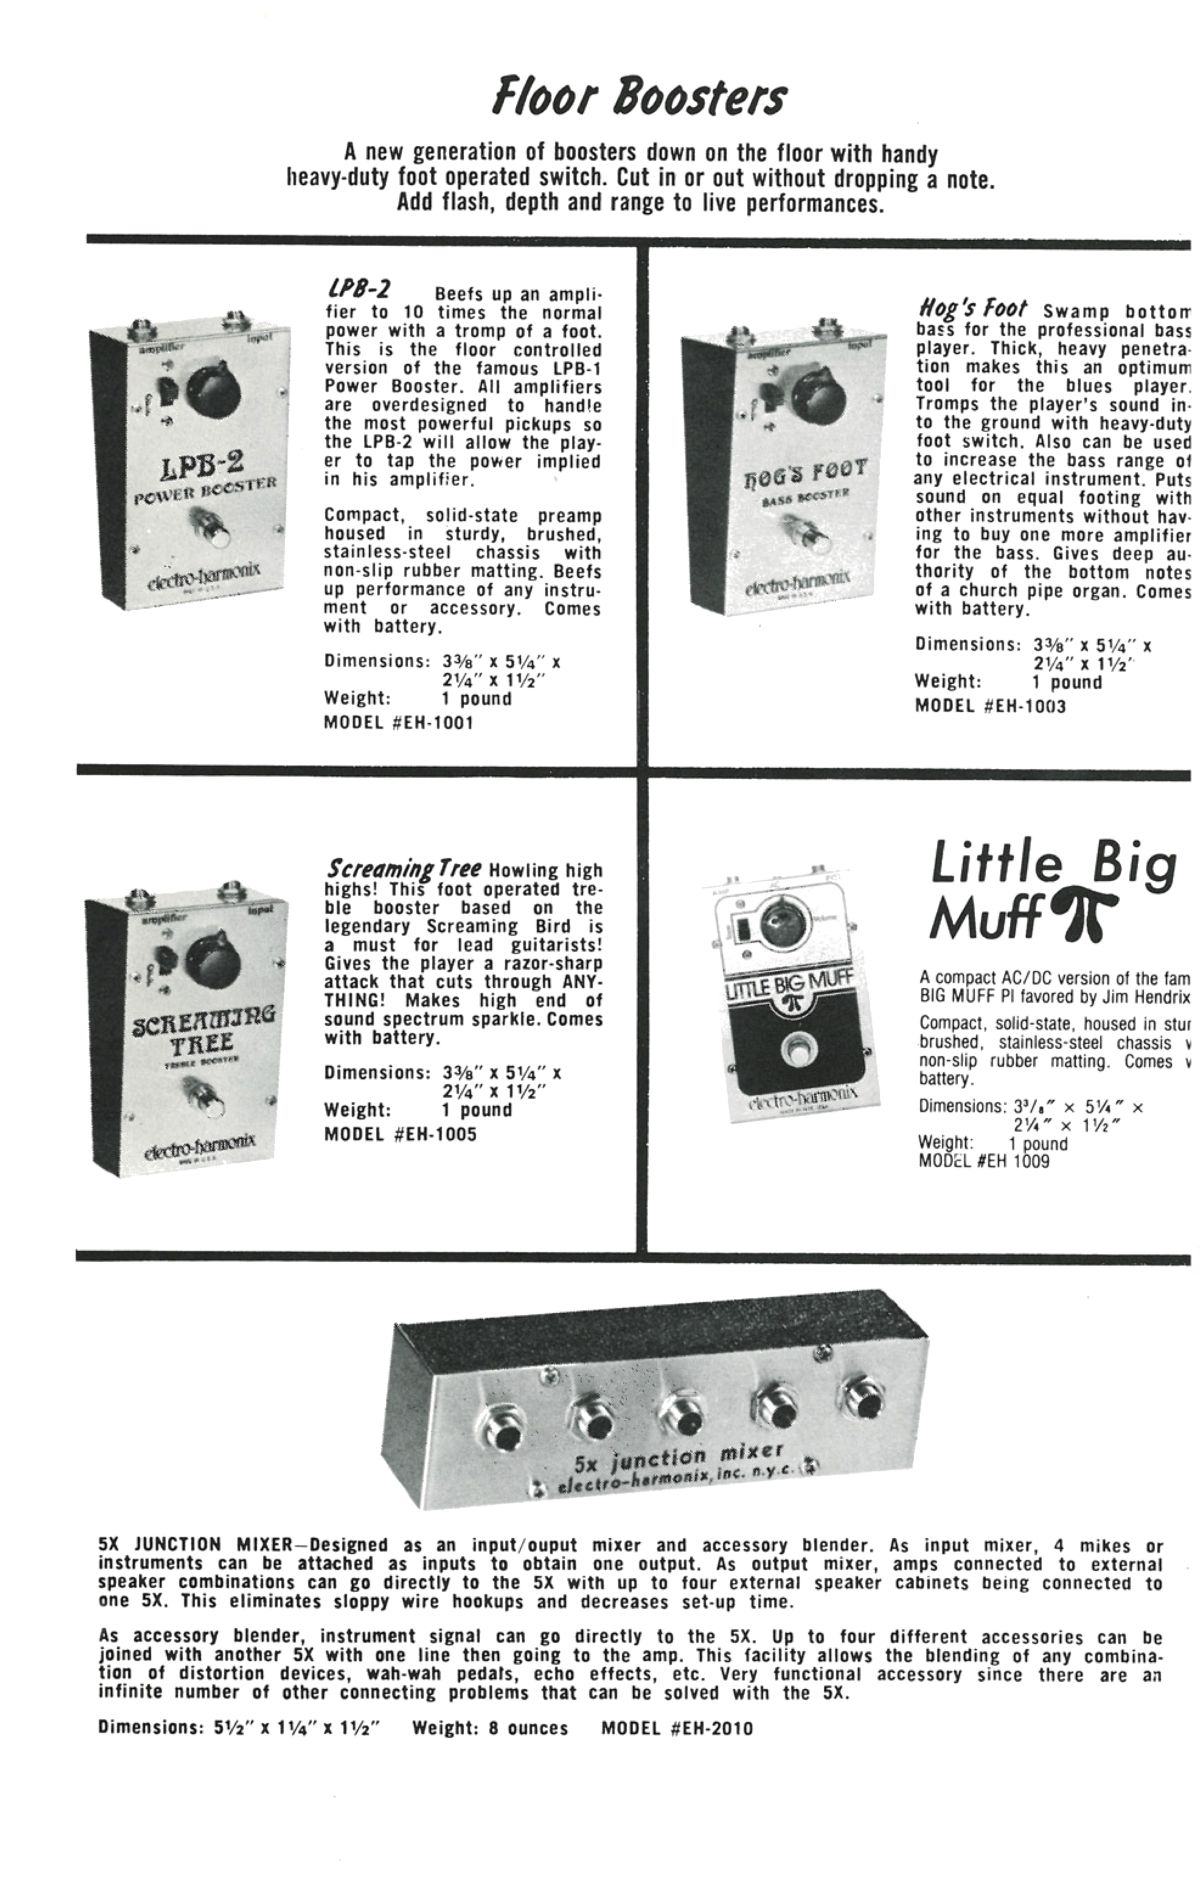 vintage electro harmonix lpb1 advertisement